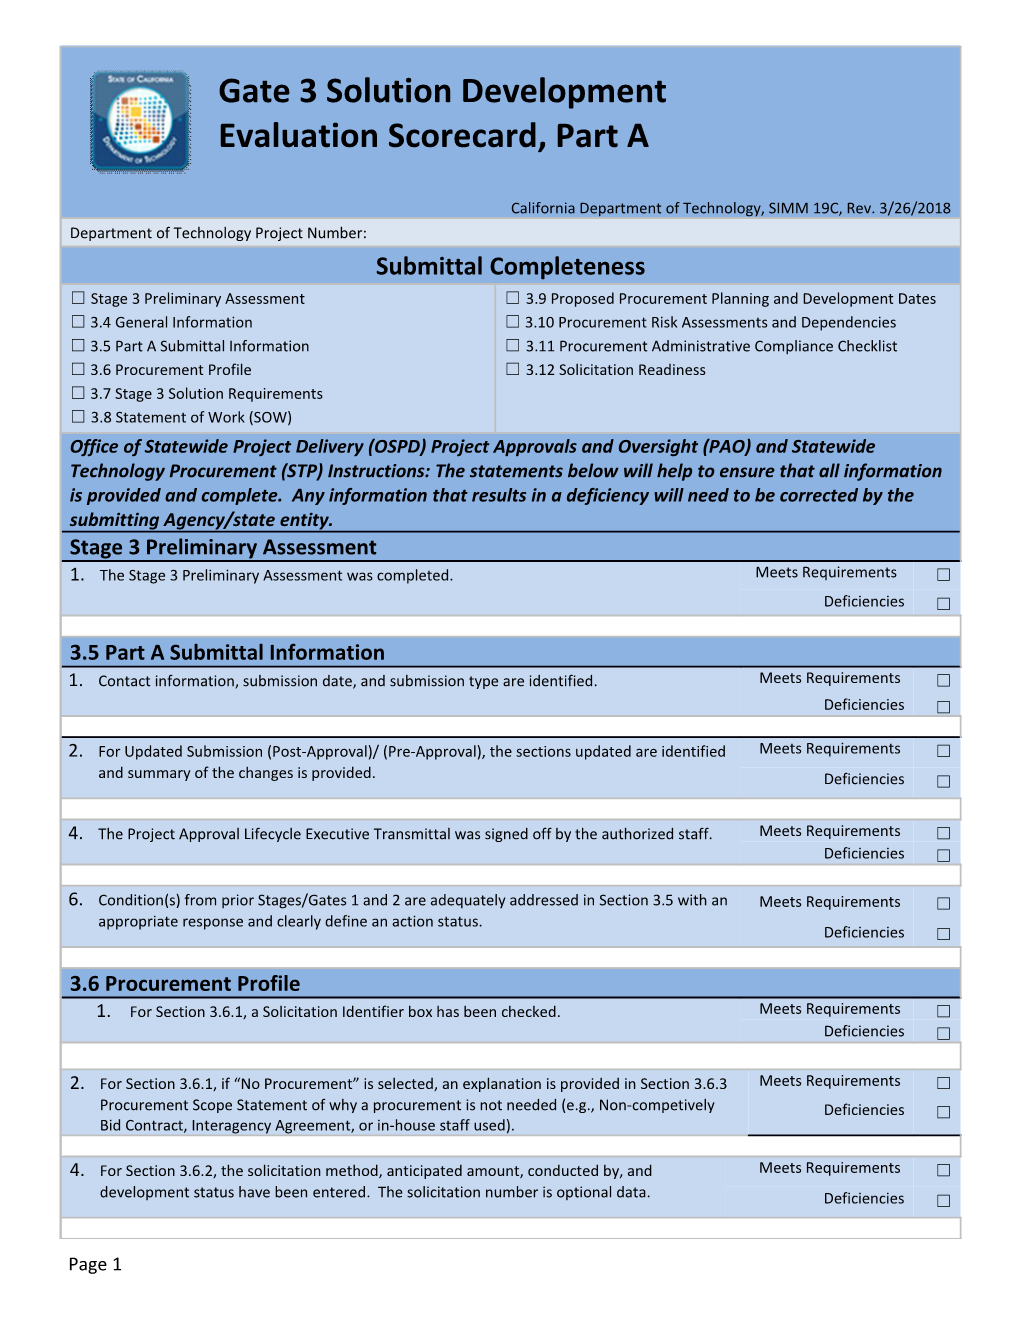 C.7 Stage 3 Evaluation Scorecard Part A